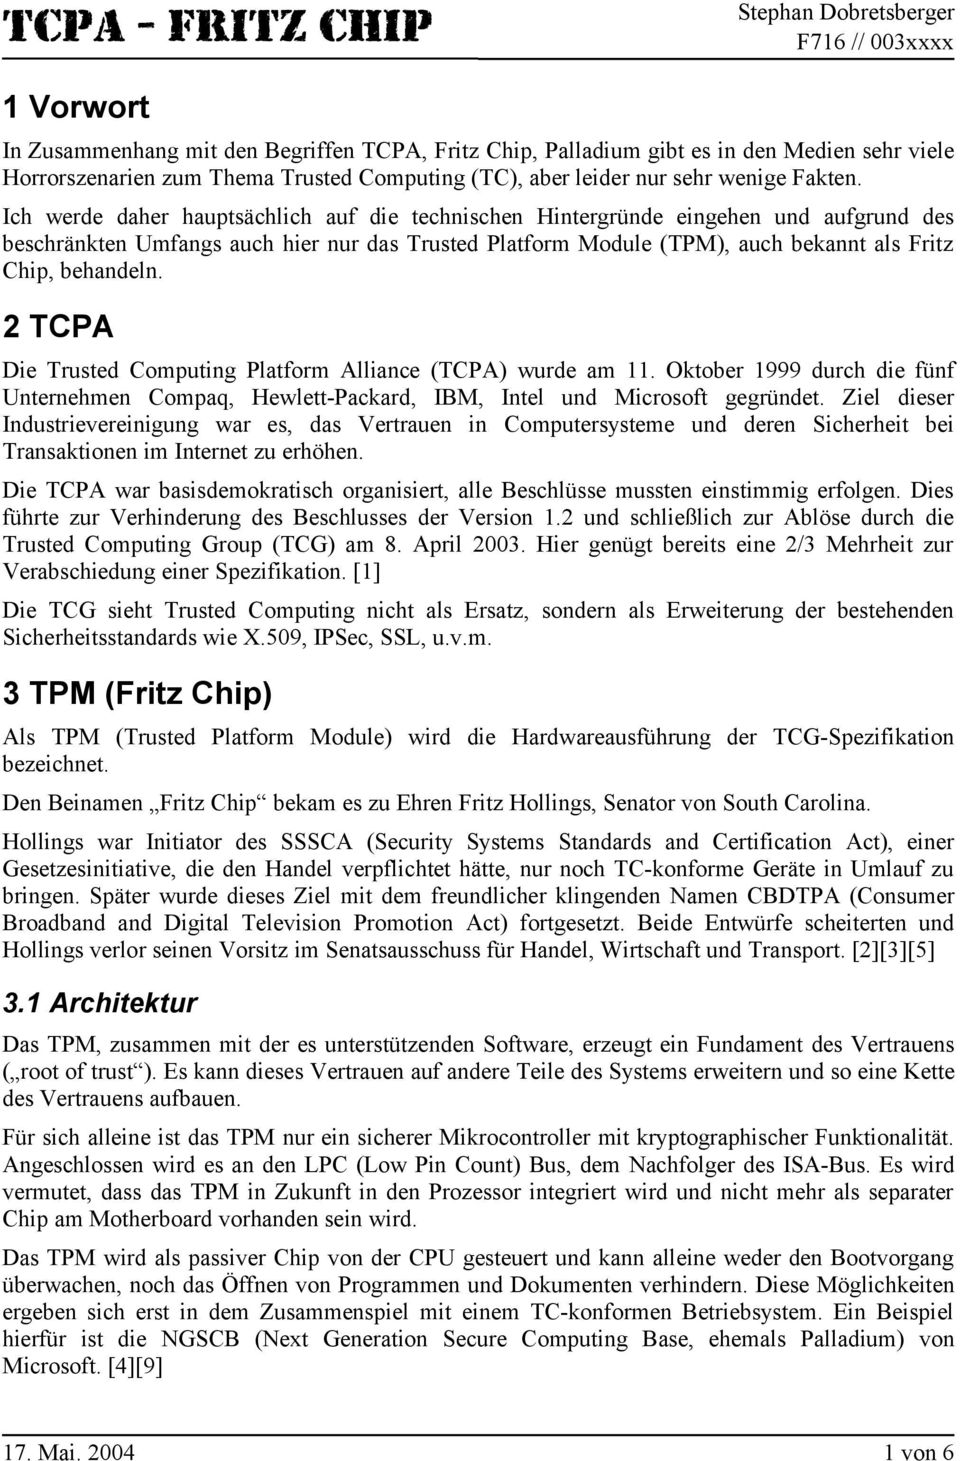 2 TCPA Die Trusted Computing Platform Alliance (TCPA) wurde am 11. Oktober 1999 durch die fünf Unternehmen Compaq, Hewlett-Packard, IBM, Intel und Microsoft gegründet.